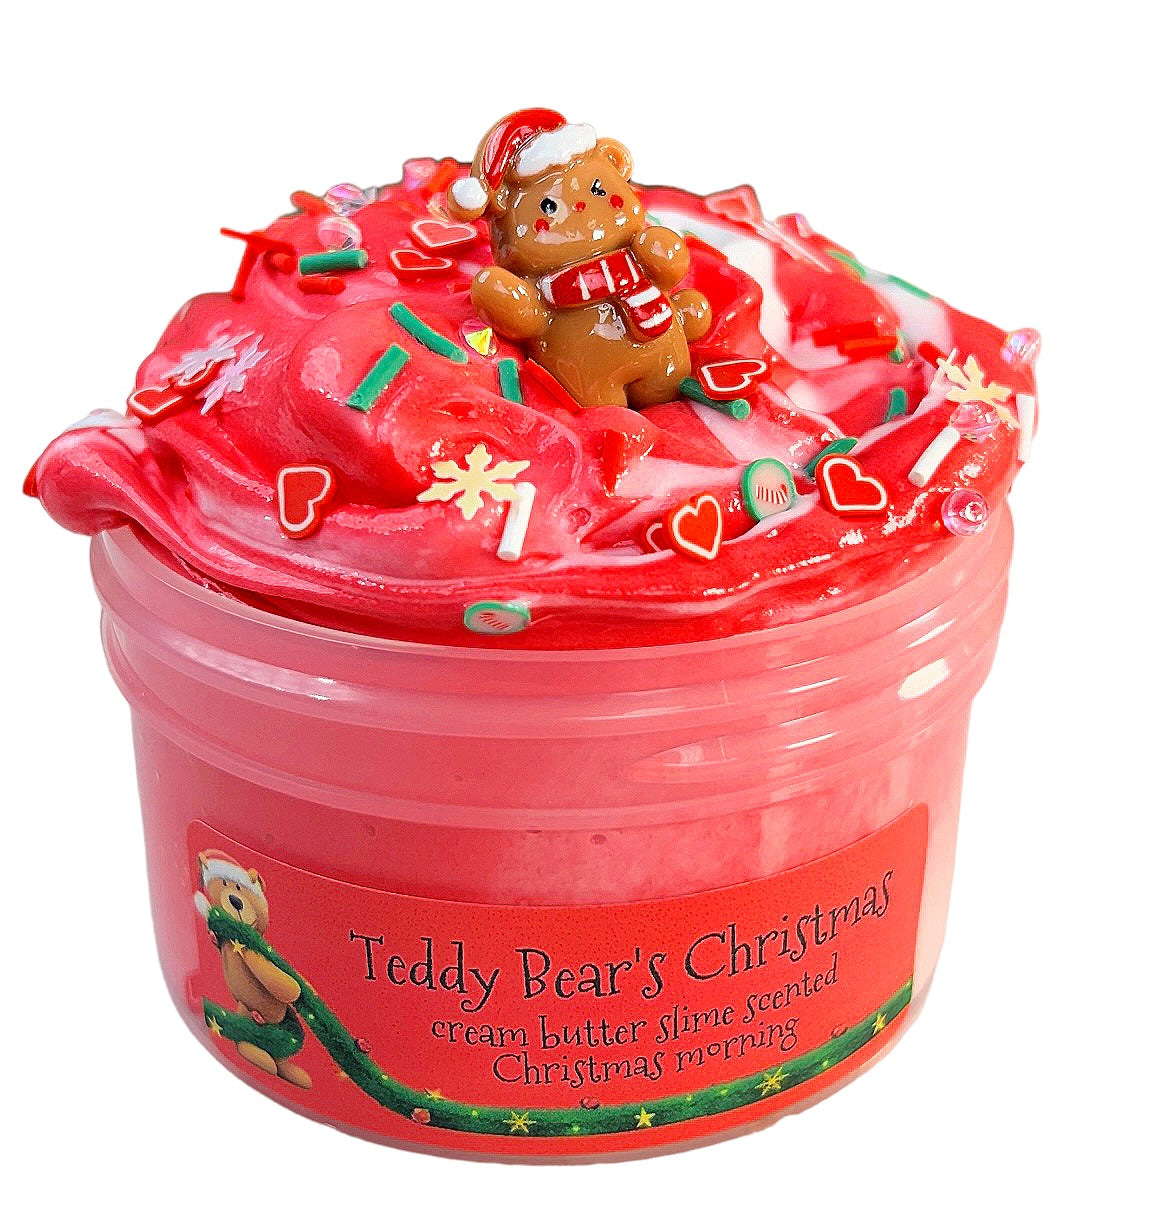 Teddy Bear's Christmas